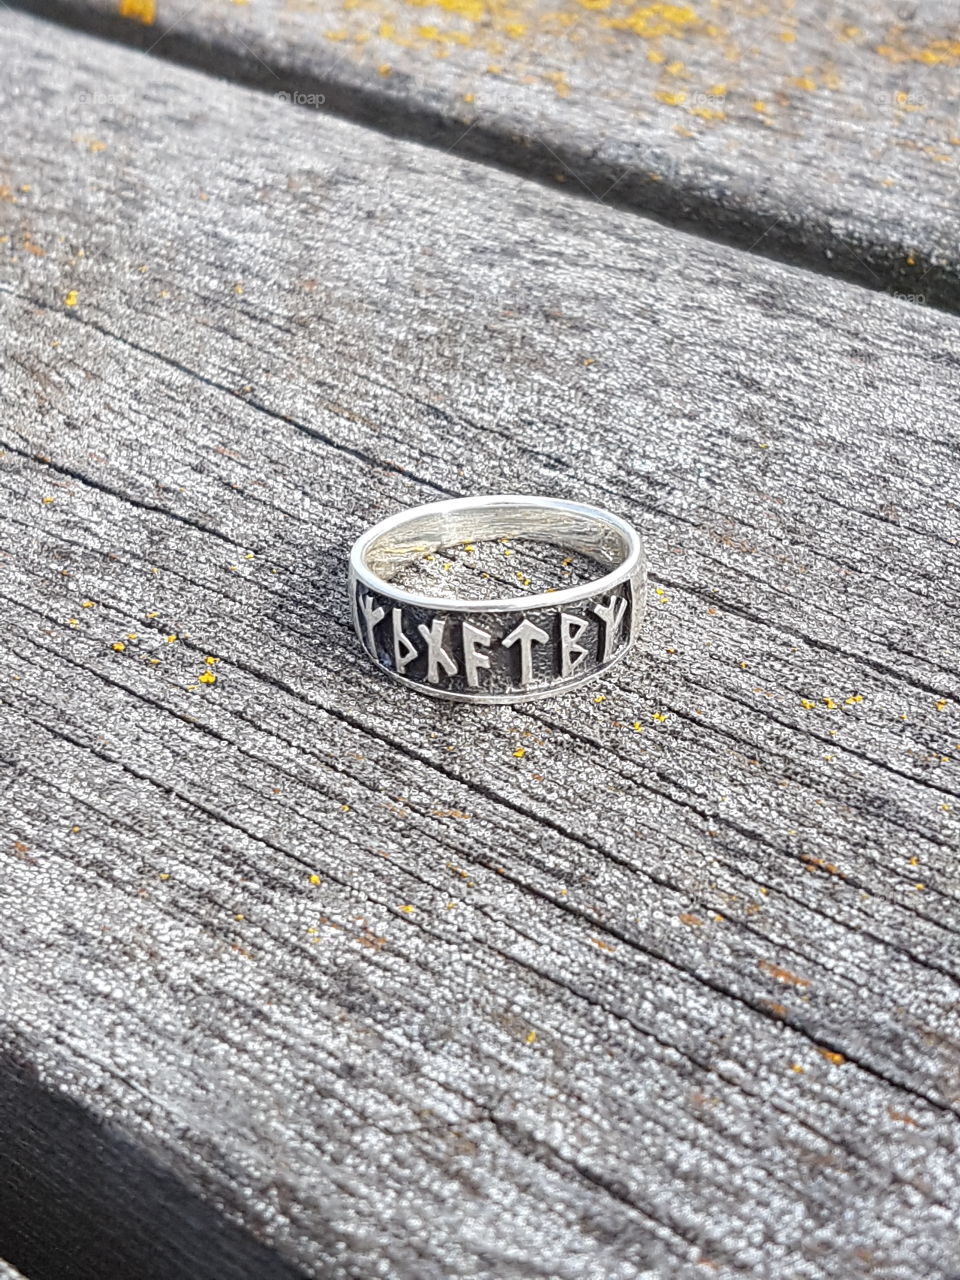 viking protected ring